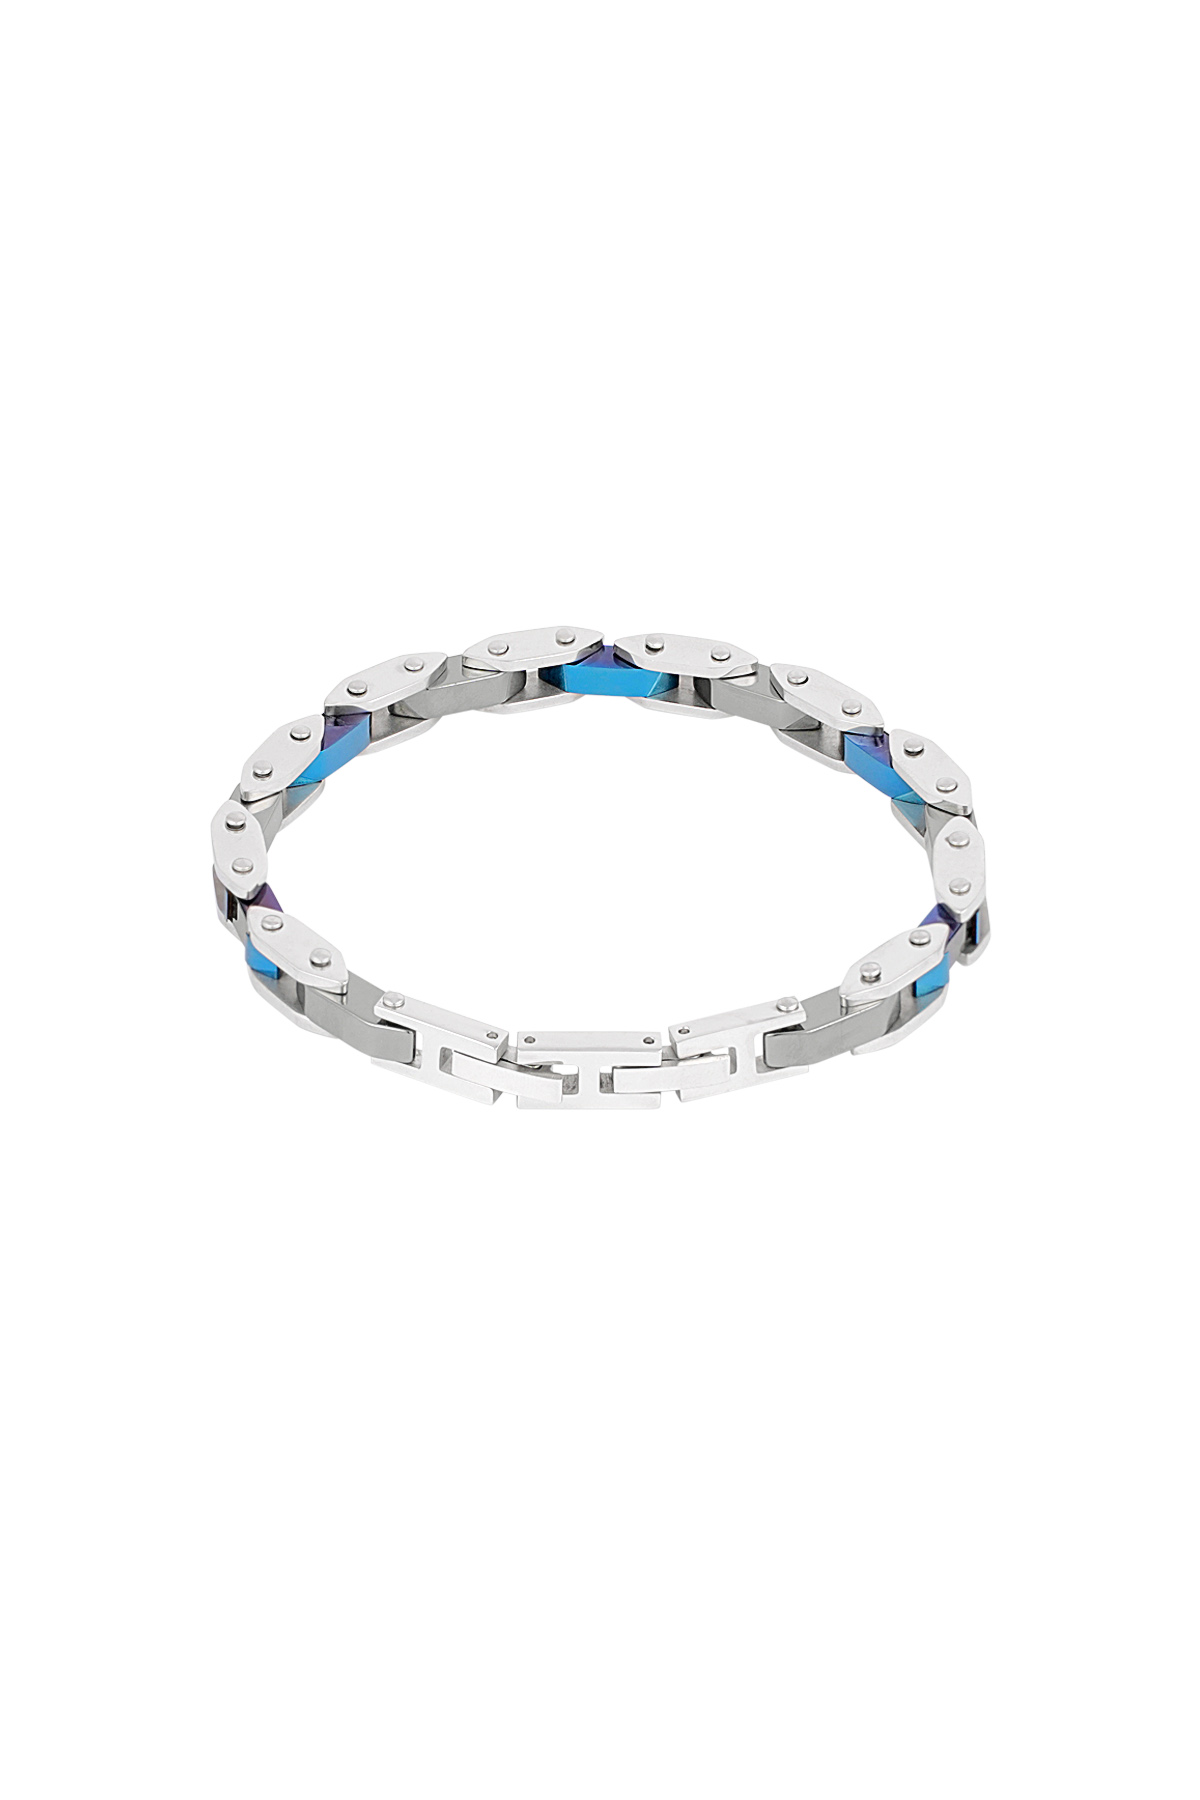 Heren armband evo strap - zilver blauw h5 